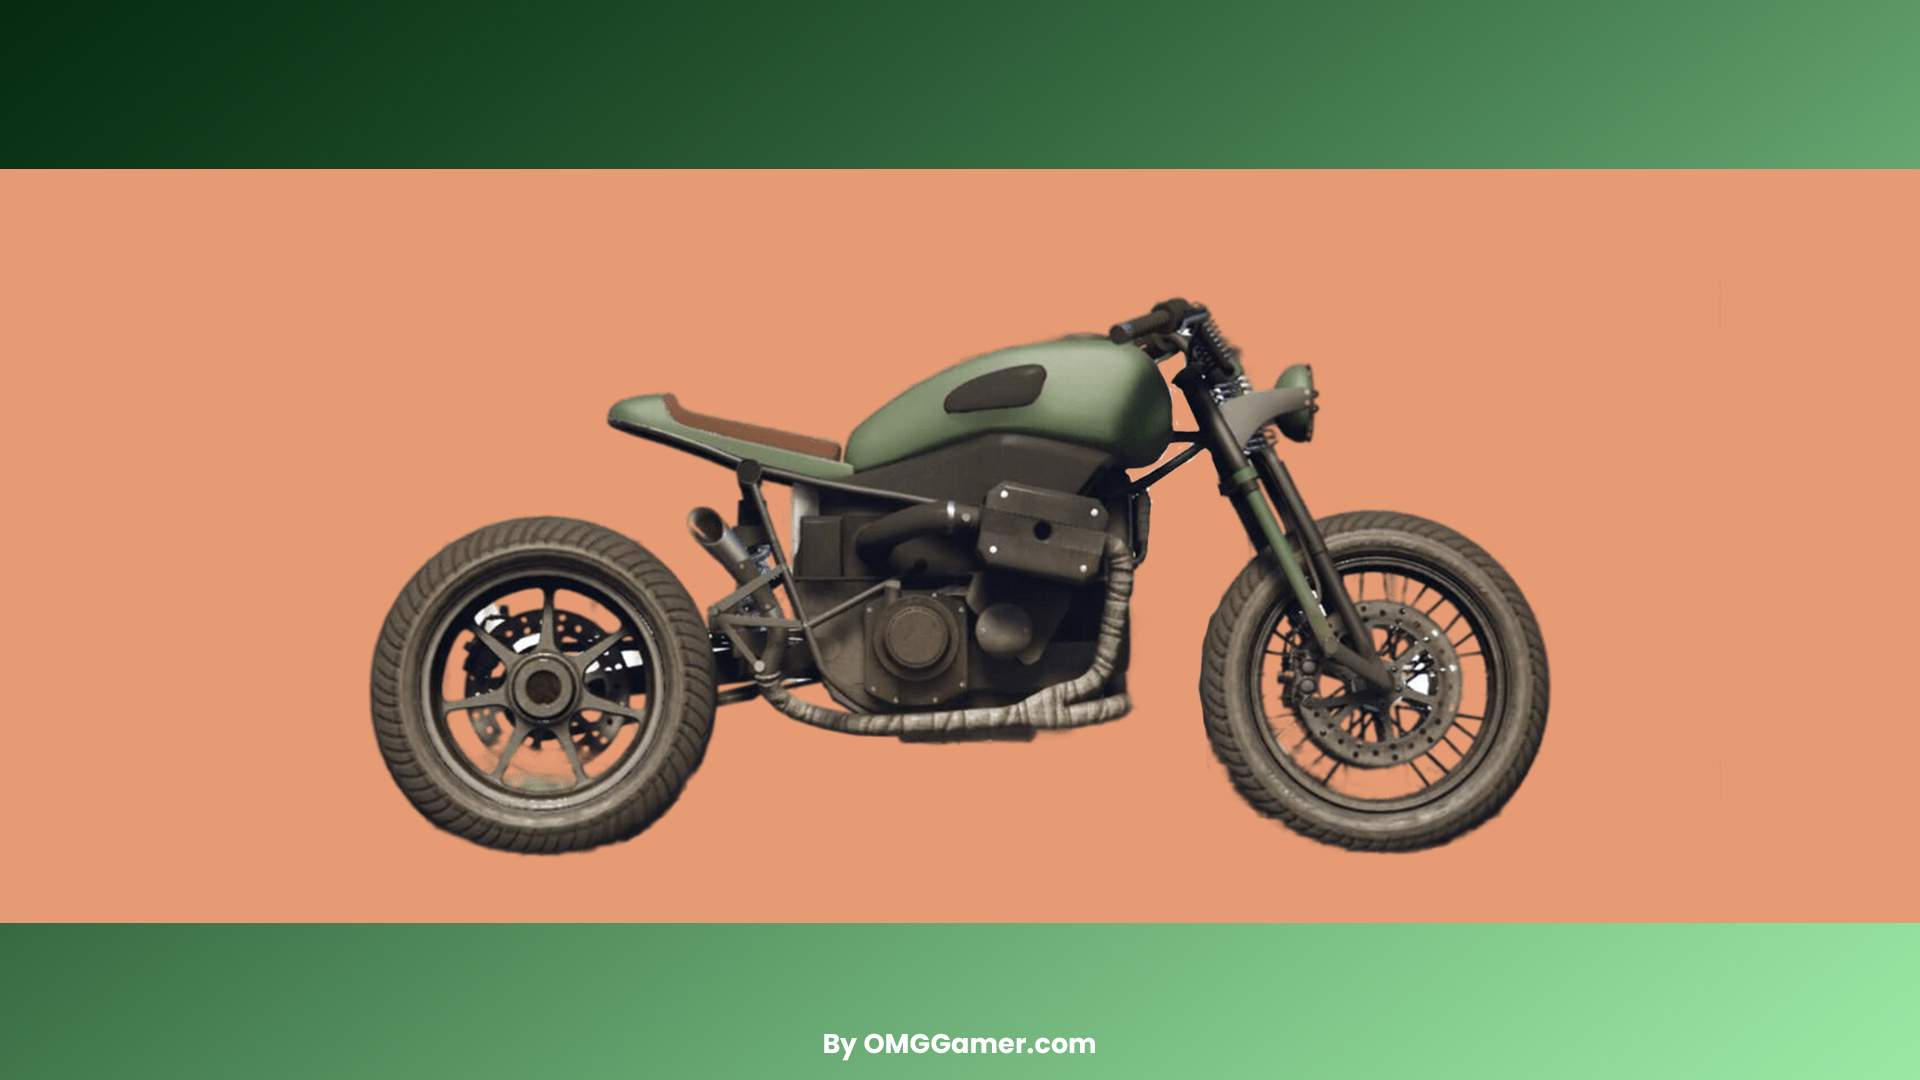 Pegassi FCR 1000 Custom: GTA 5 Motorcycle